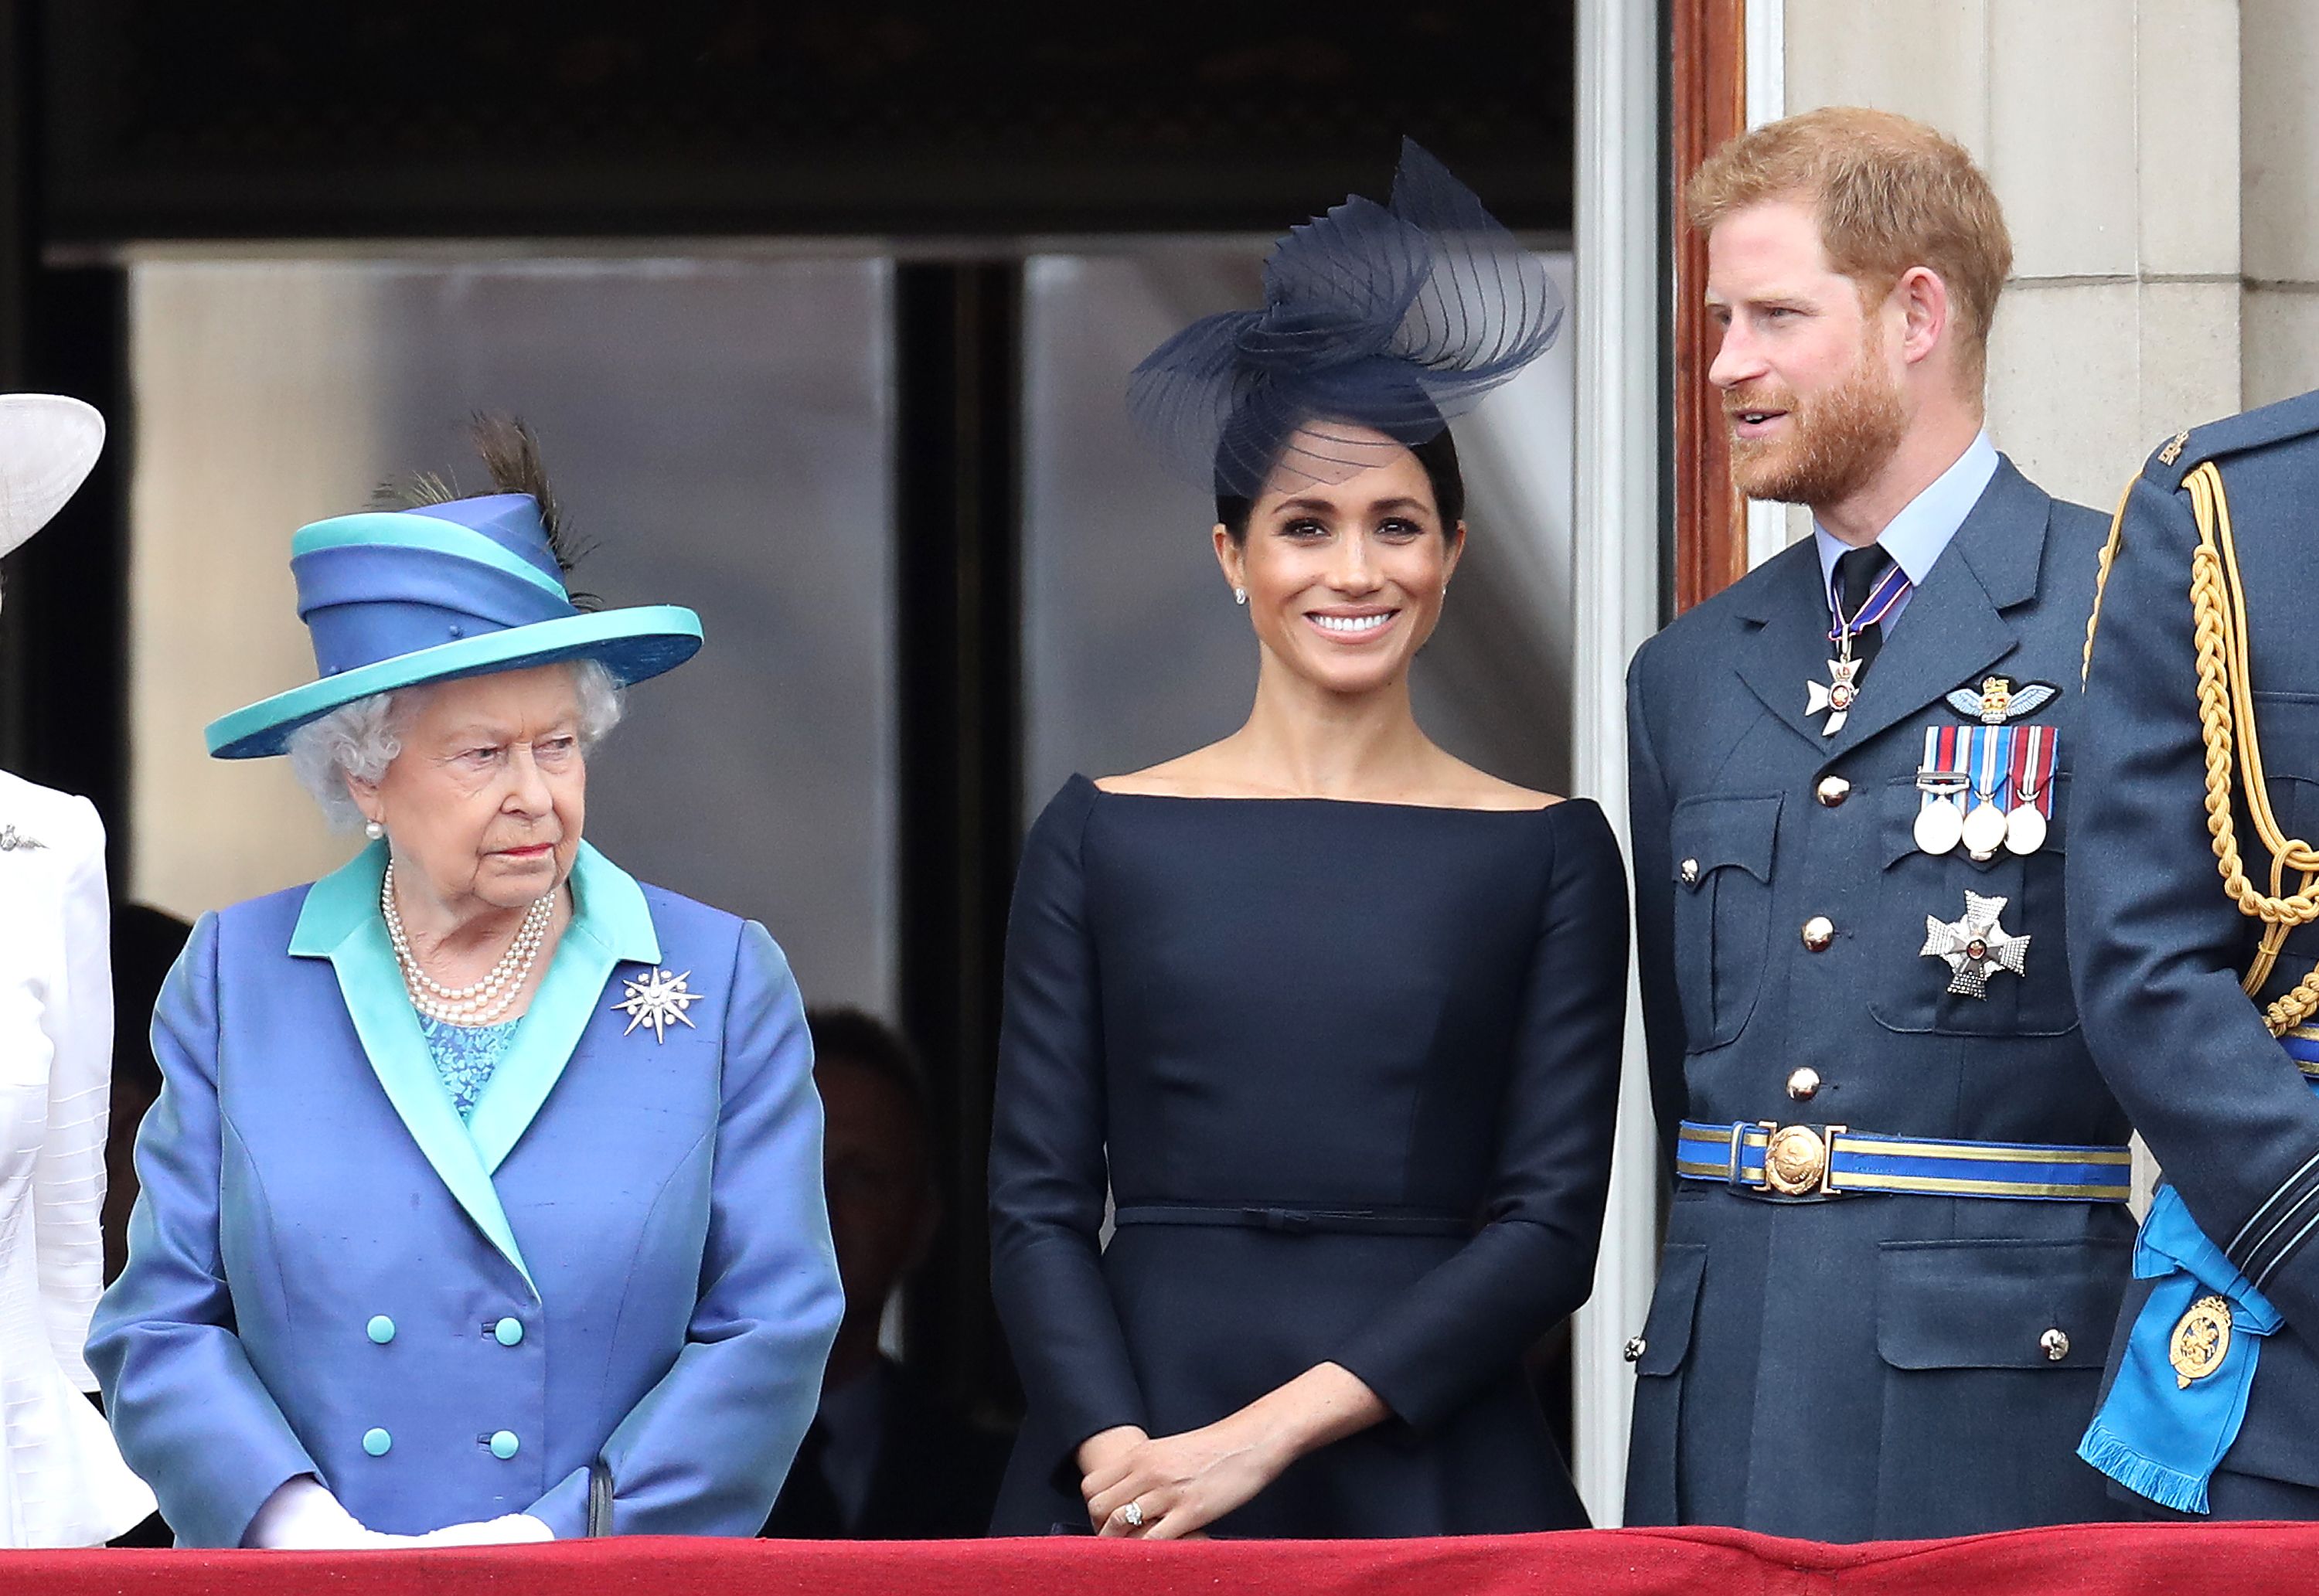 La reina antepuso la "monarquía" al príncipe Harry y Meghan Markle, según un experto real